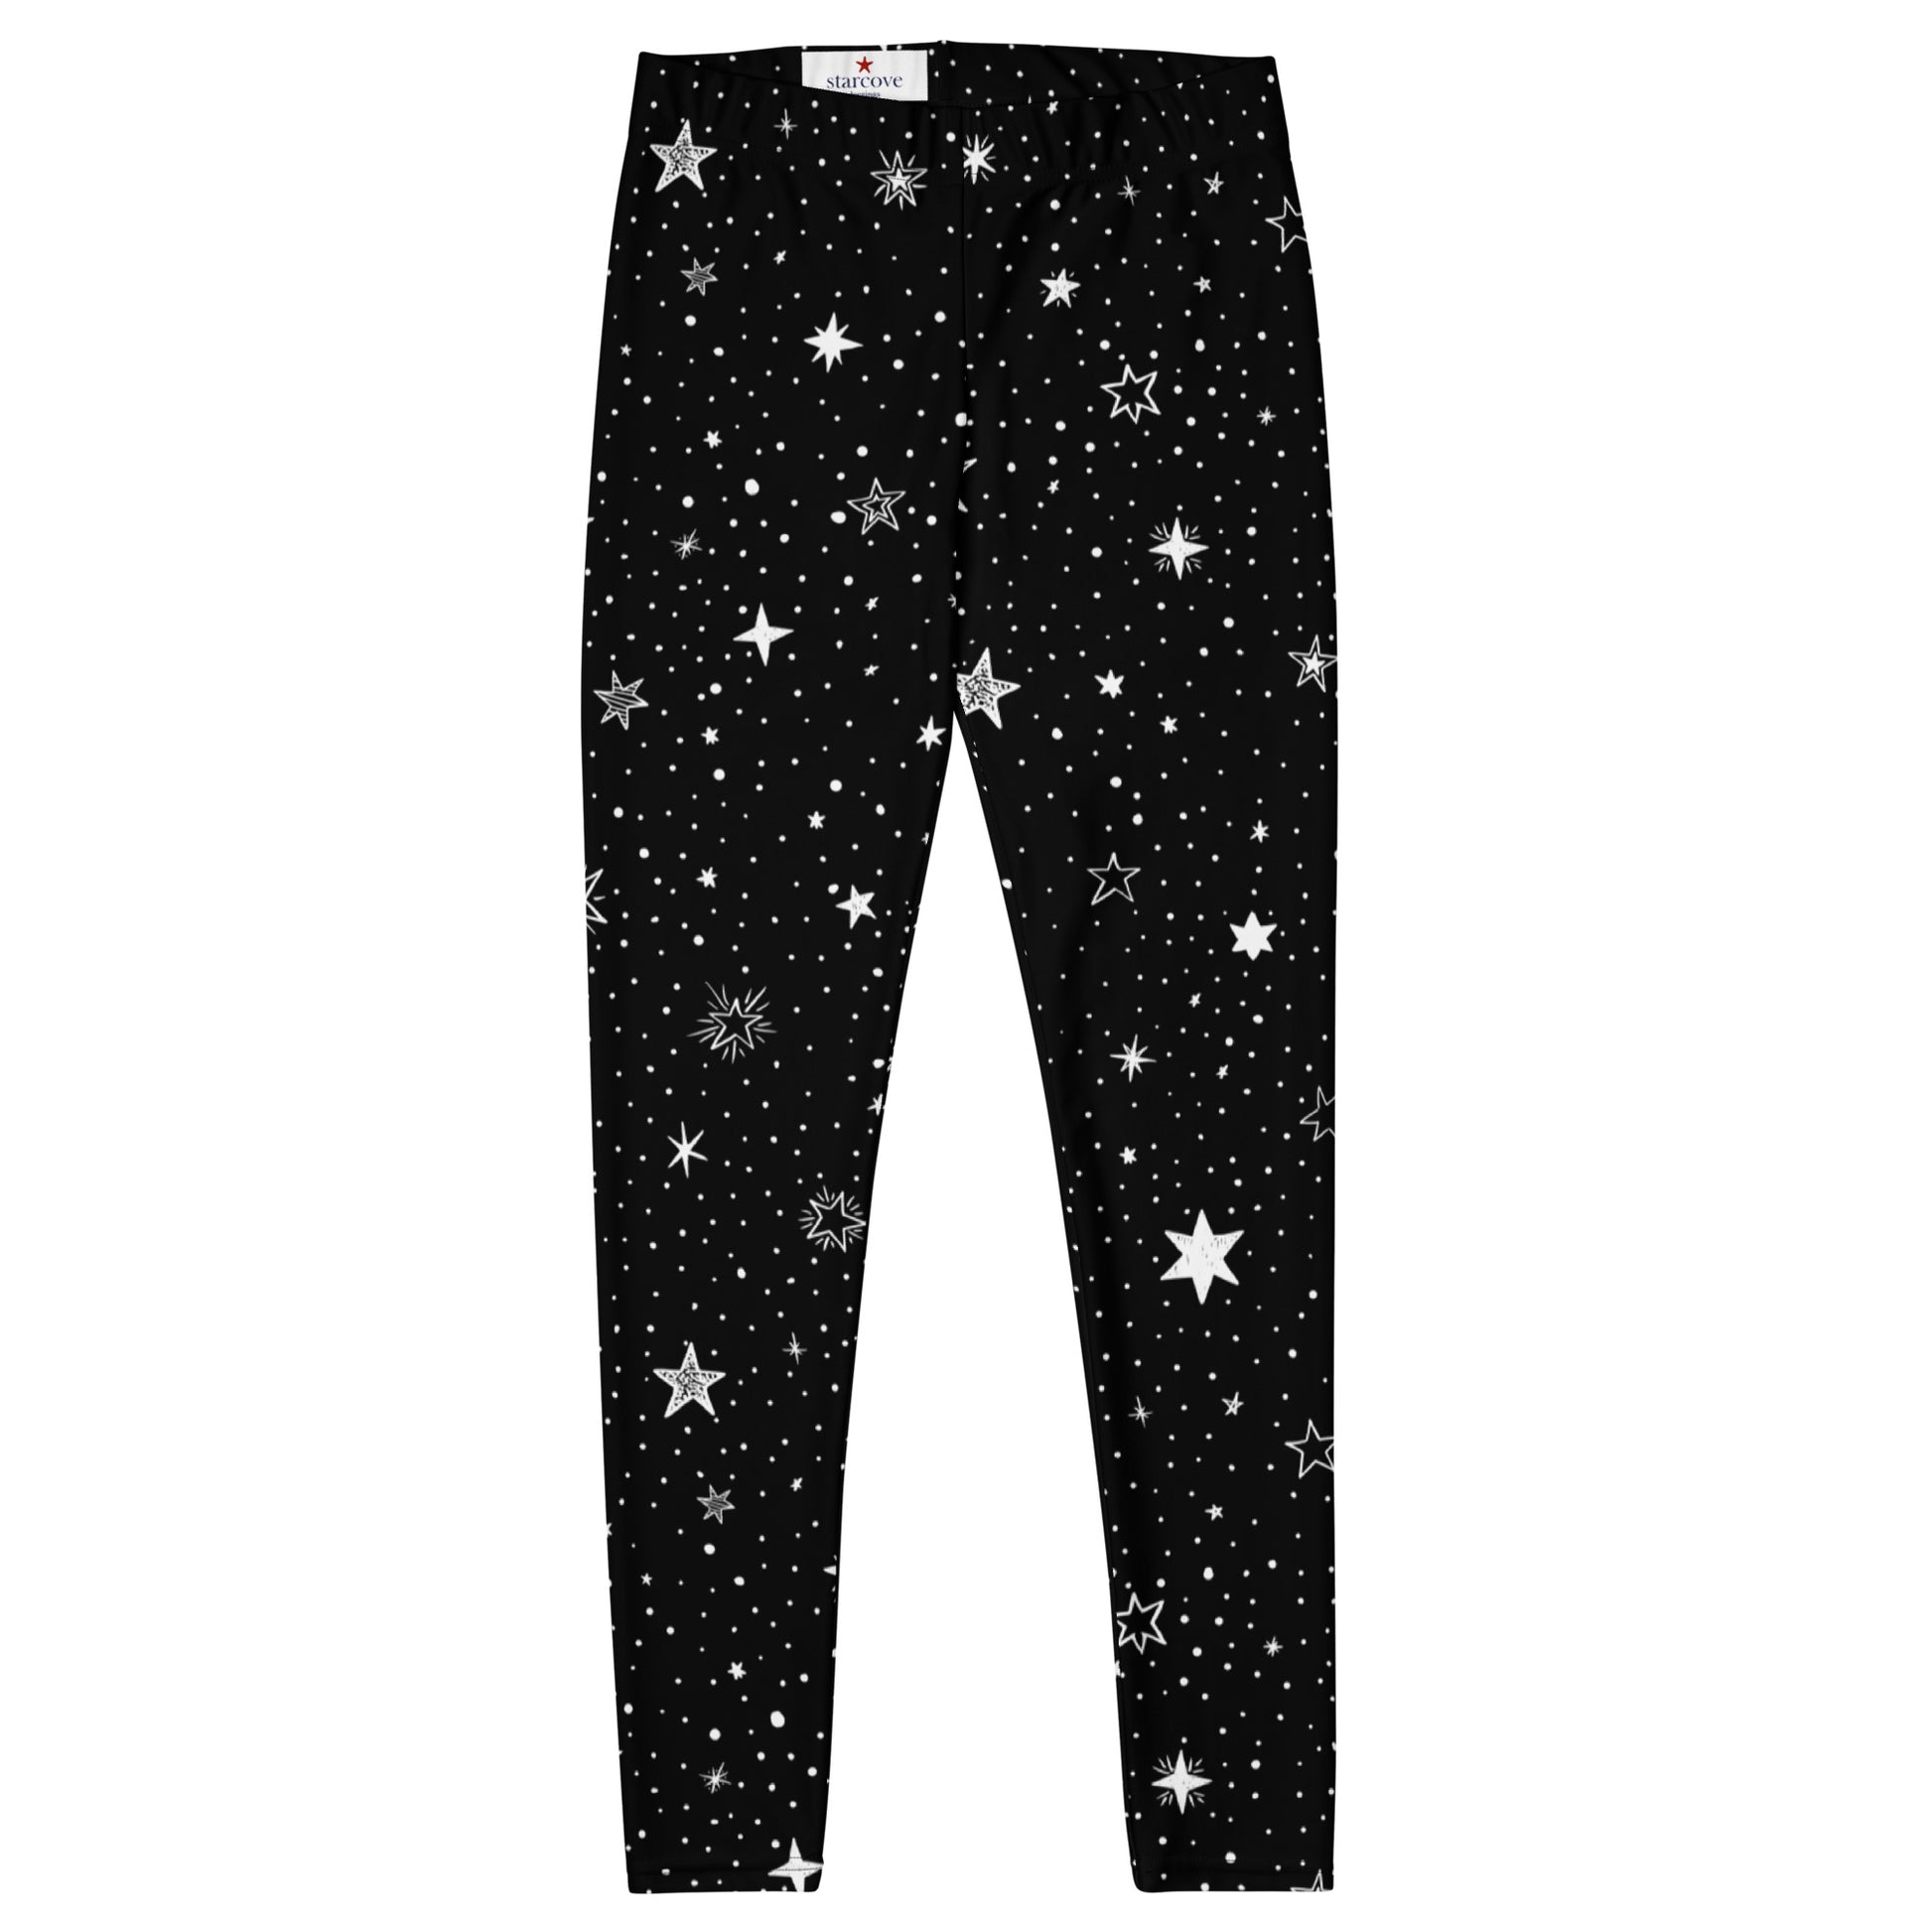 Stars Leggings Women Ladies, Black White Printed Yoga Pants Cute Graphic Workout Running Gym Fun Designer Tights Gift Starcove Fashion